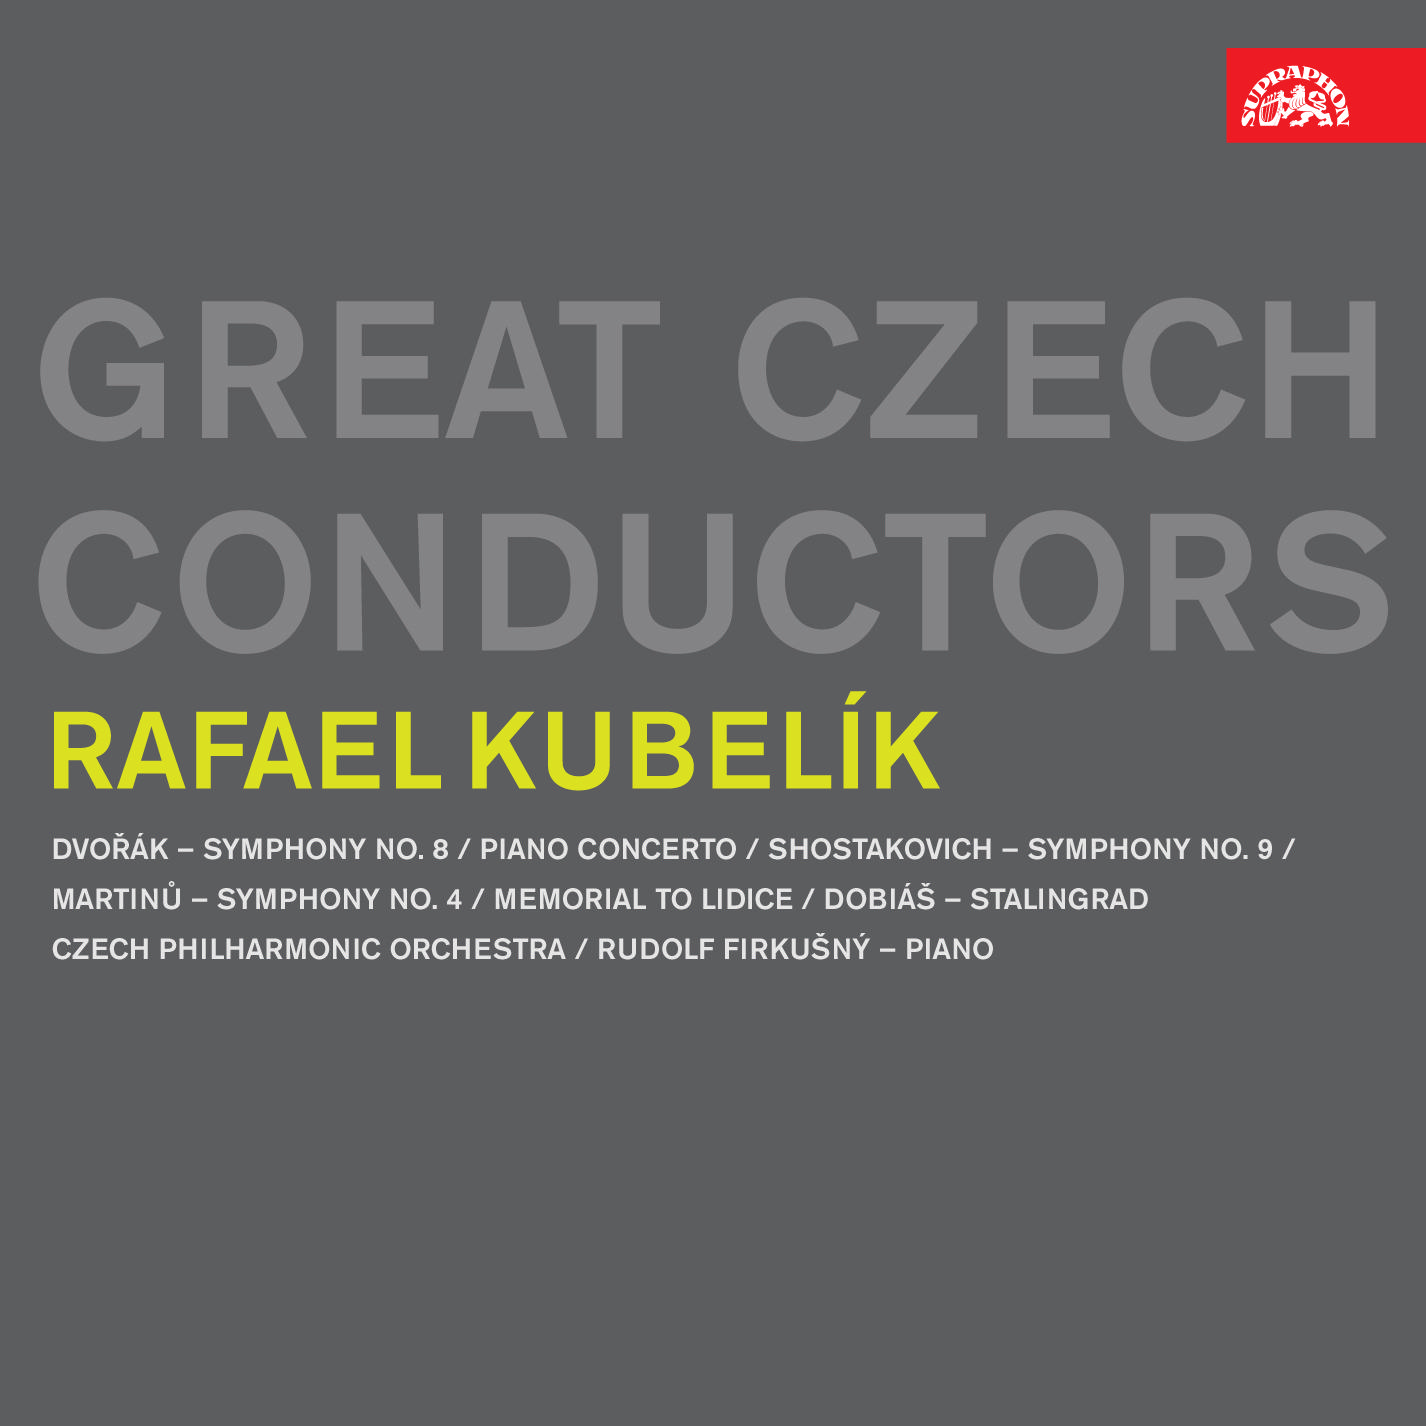 CD Shop - KUBELIK RAFAEL GREAT CZECH CONDUCTORS RAFAEL KUBELIK /D